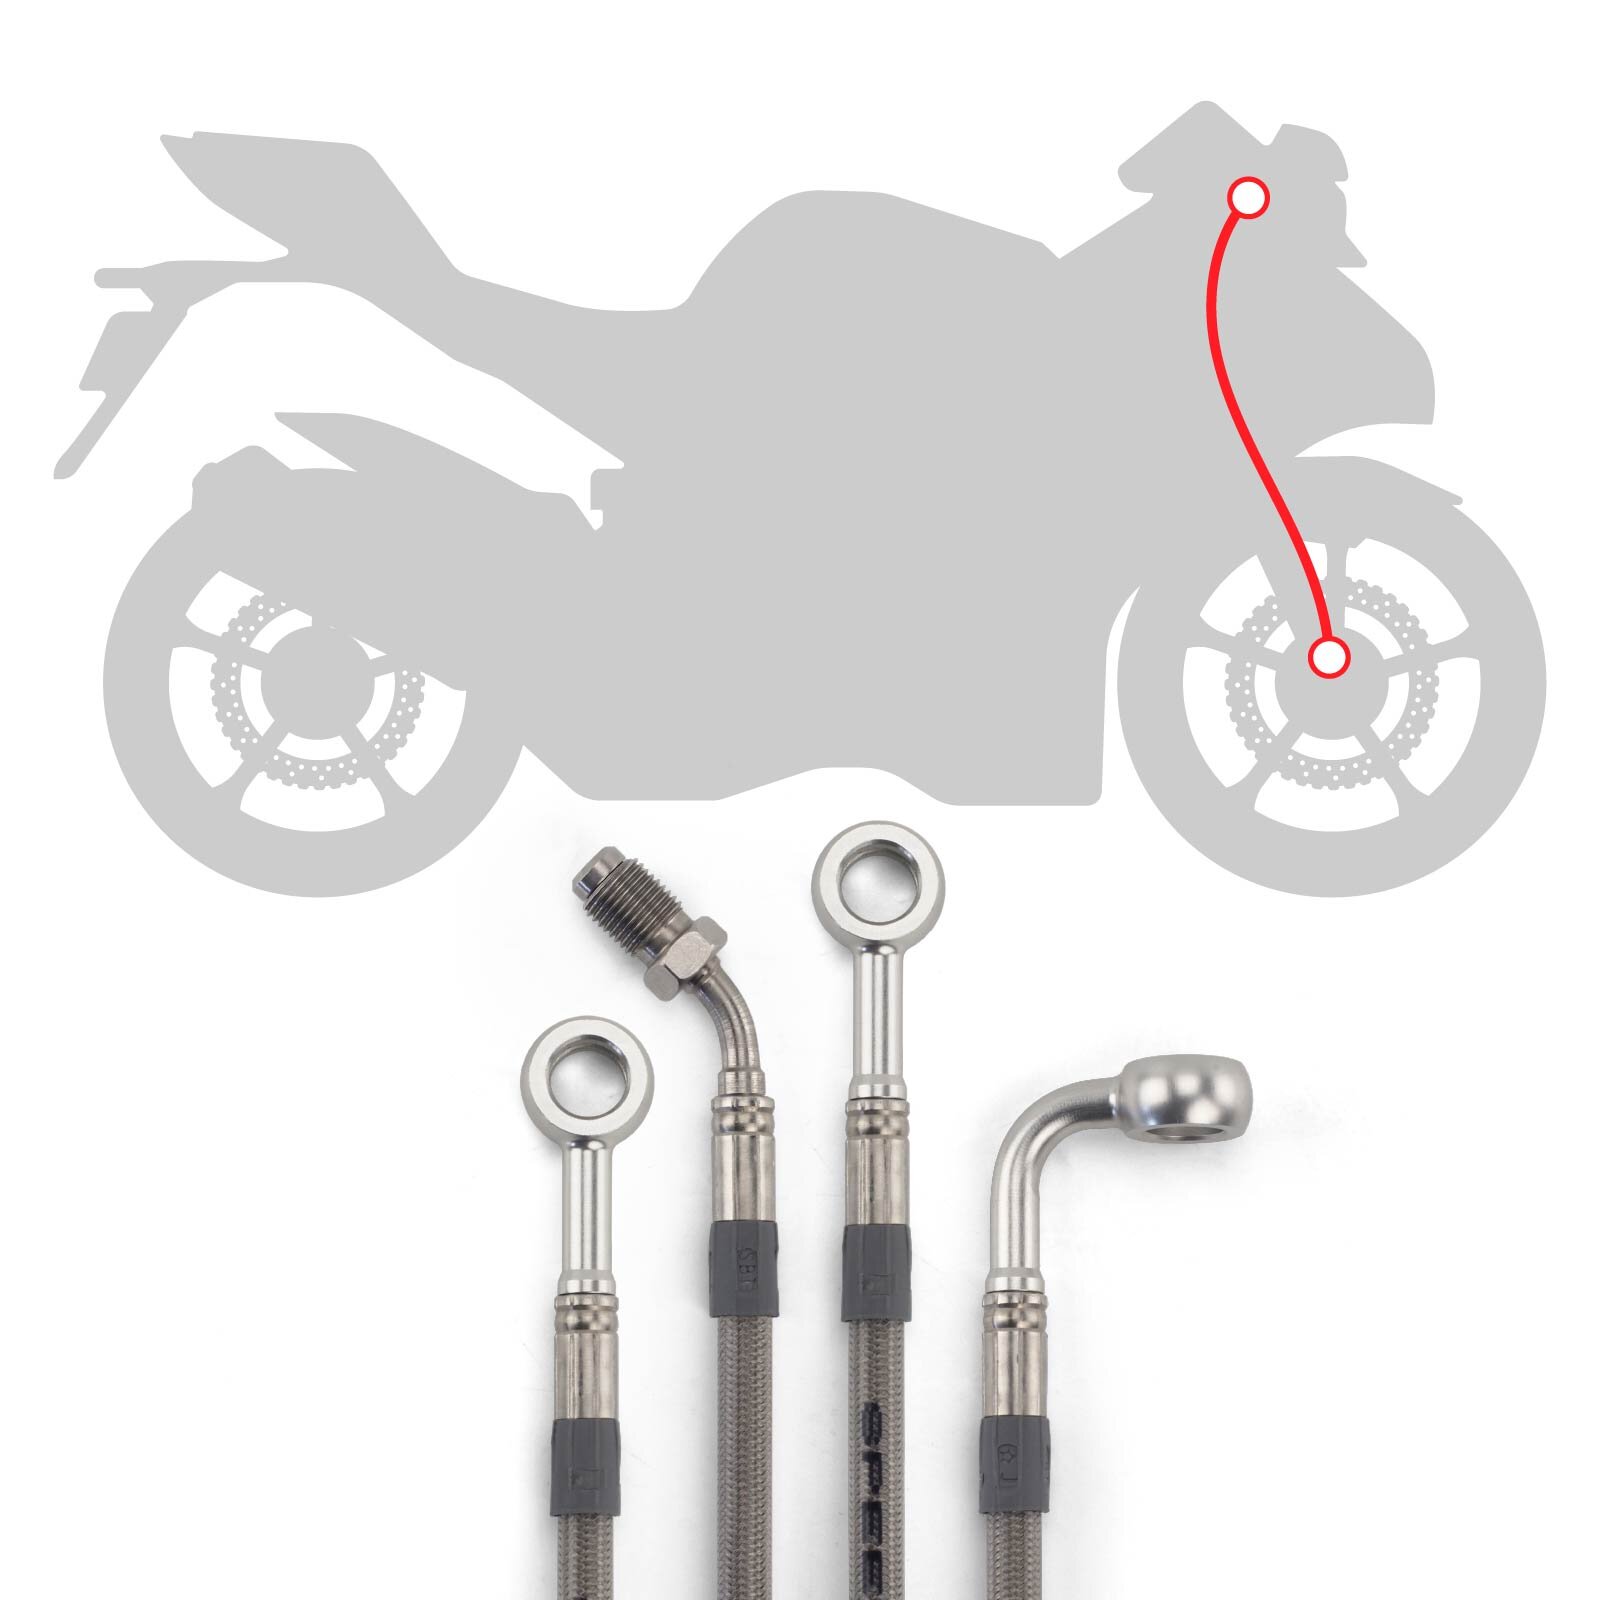 Stahlflex Bremsleitungs Kit mit silbernen Fittings und Leitungen mit transparenter Ummantelung, Infografik für die Verlegung der Leitungen vorne